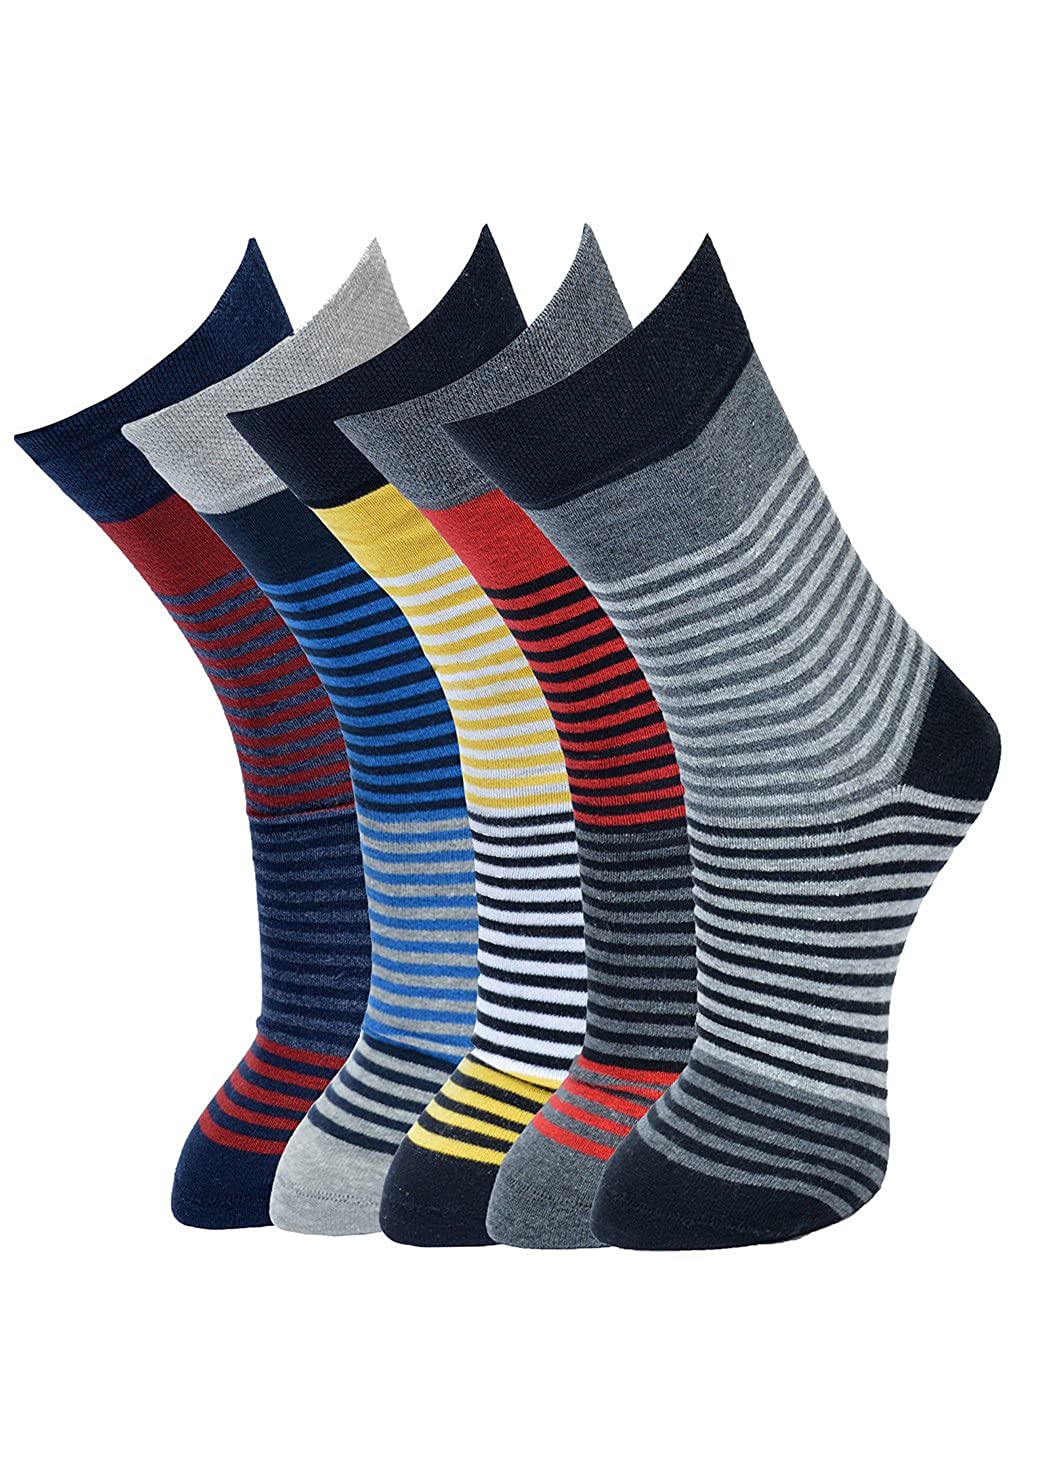 Colorful striped cotton crew socks2